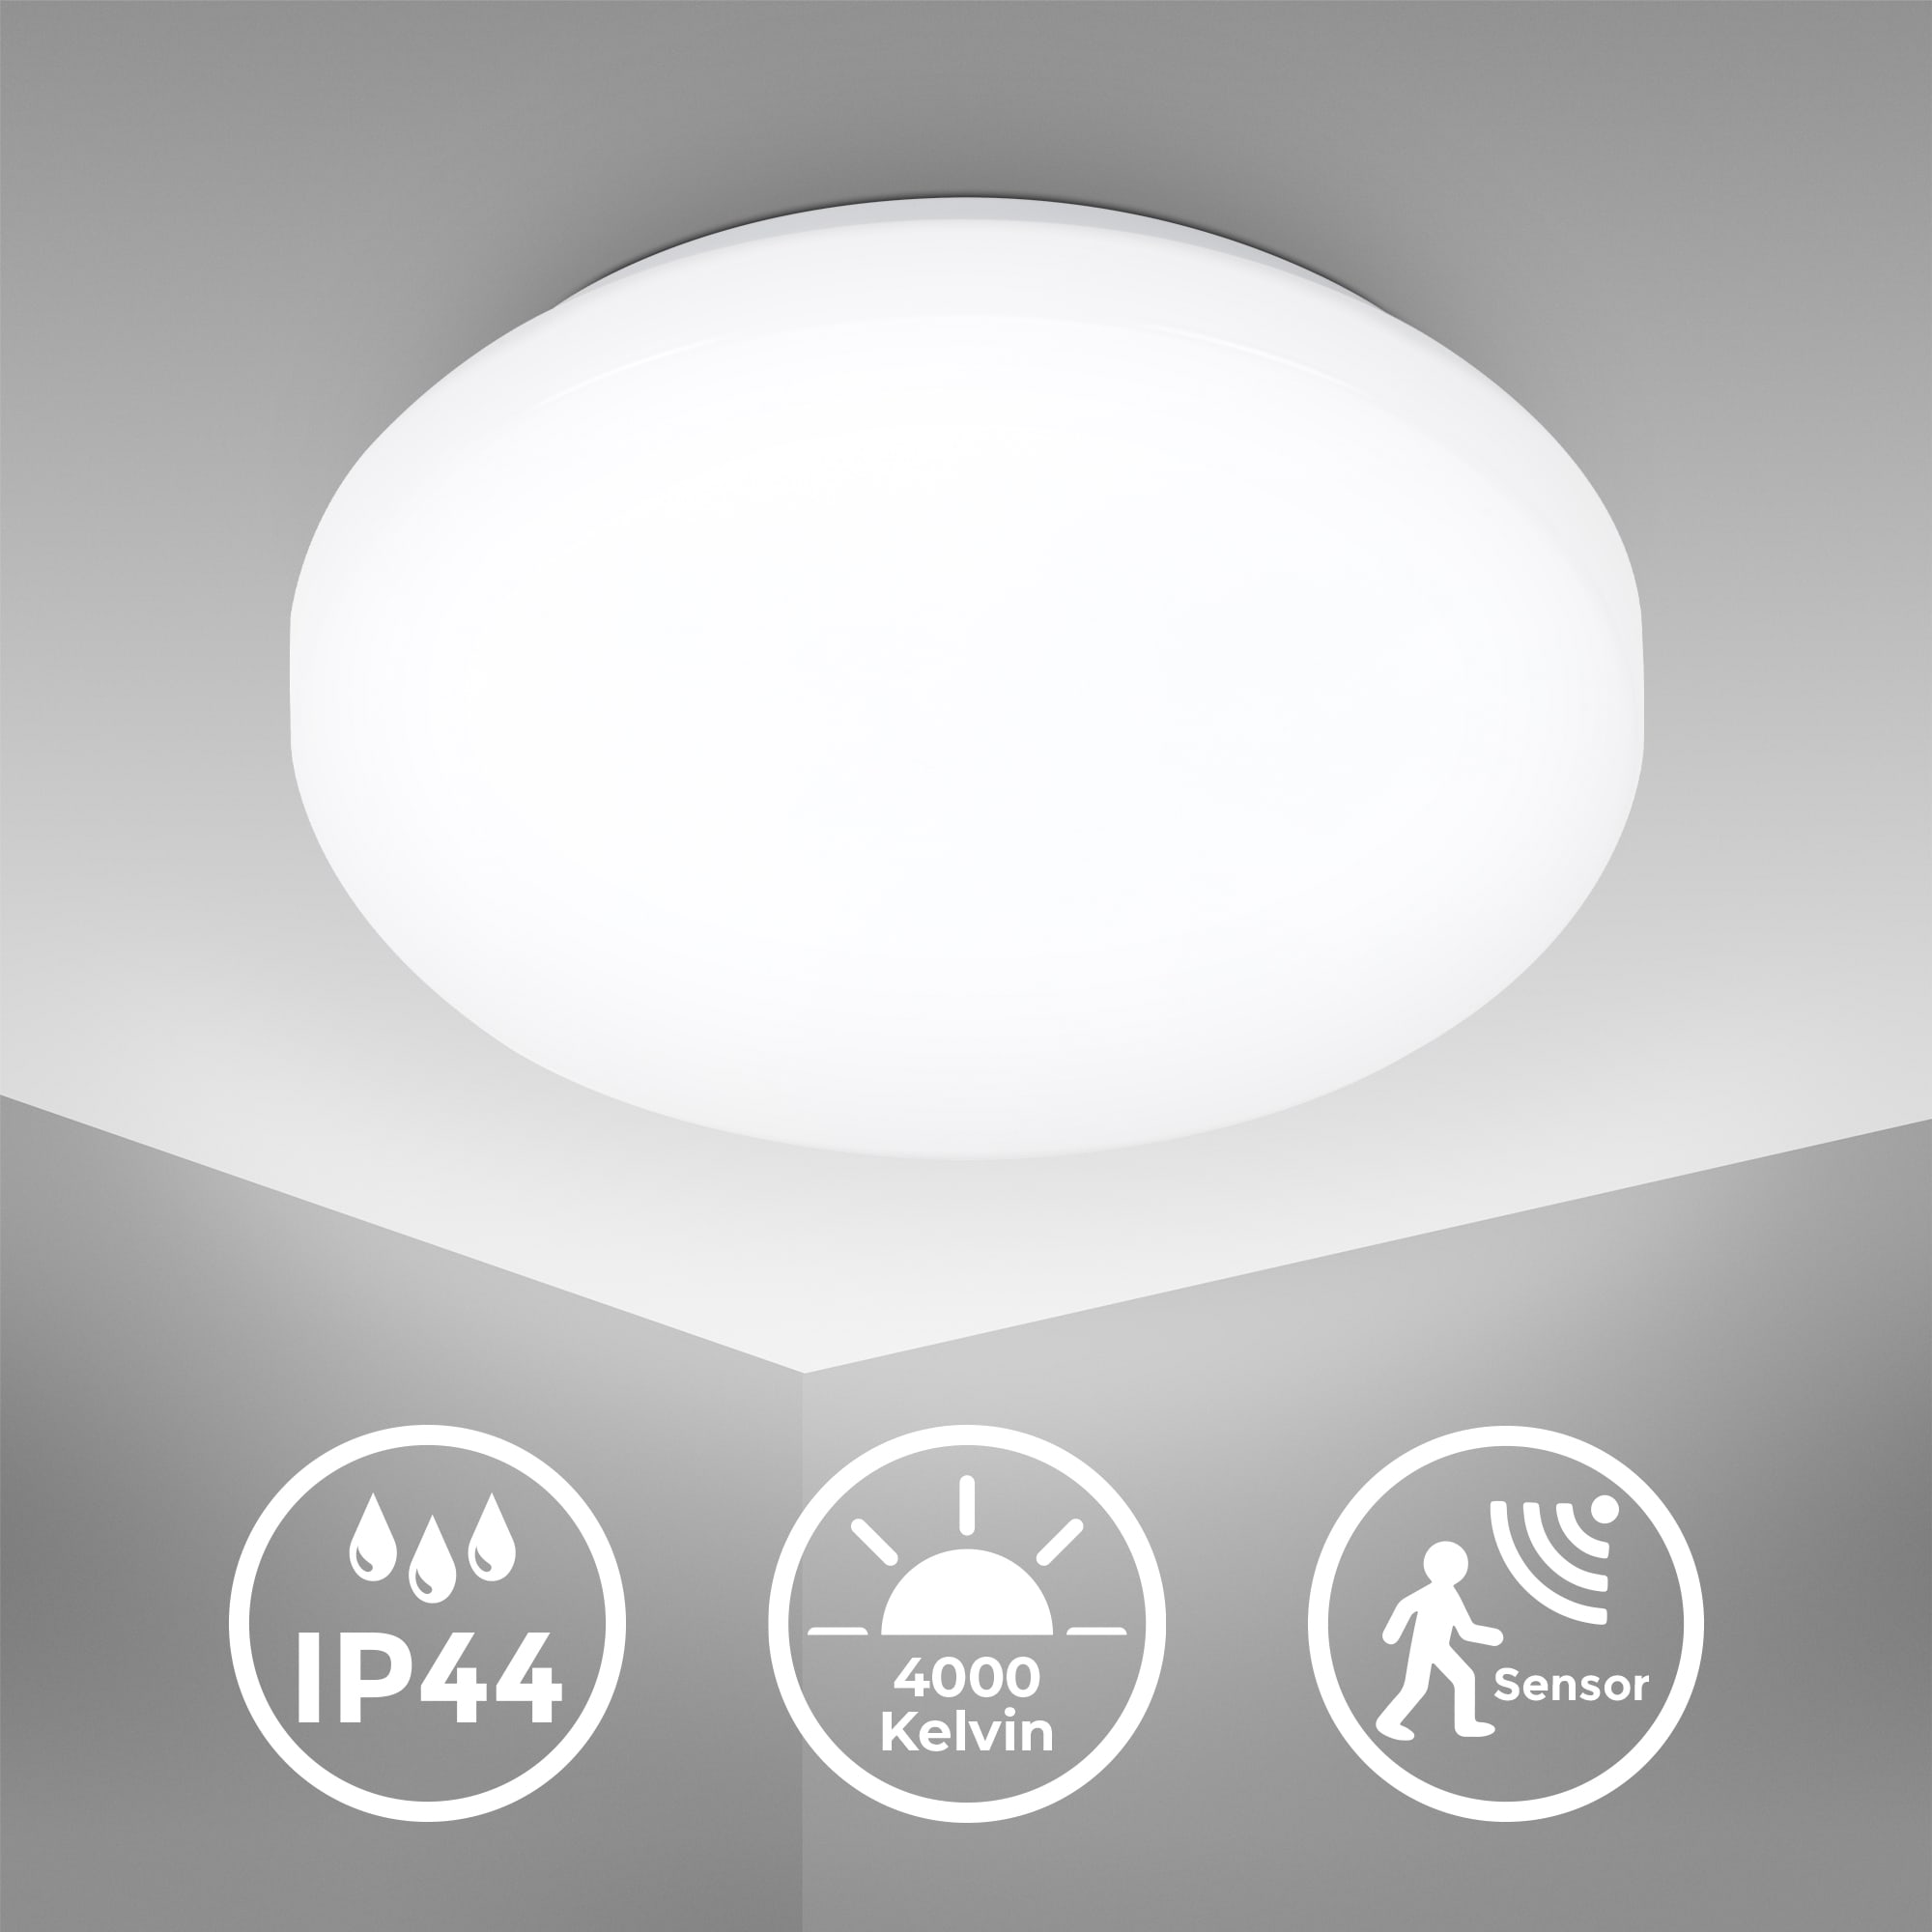 LED Deckenleuchte Bad rund IP 44 - 29x6,6cm - Deckenlampe mit Bewegungsmelder 12W 1200lm 4000K neutralweißes Licht | weiß - 4